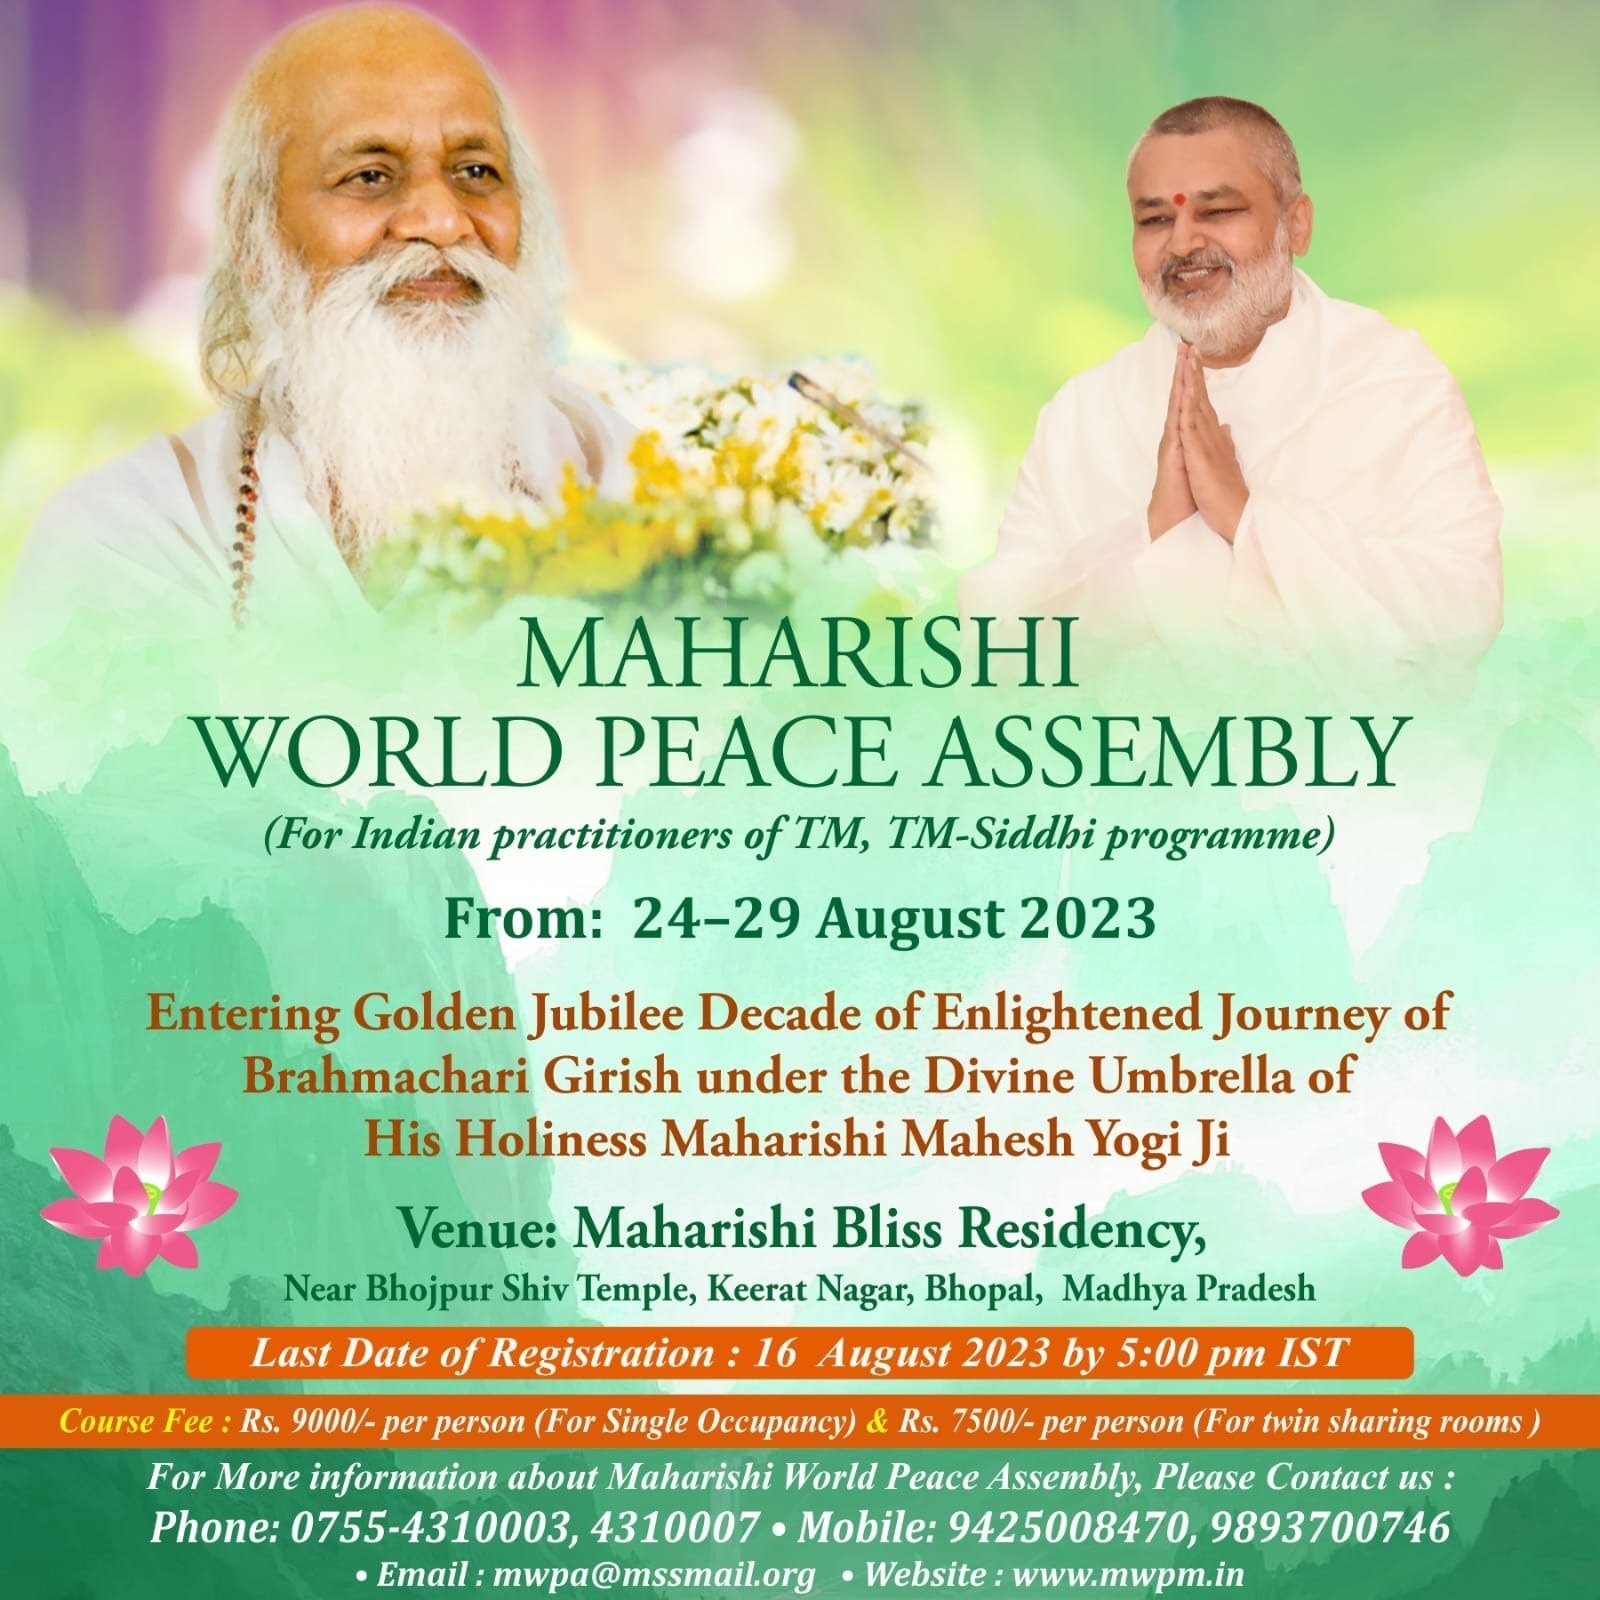 Maharishi World Peace Assembly 2023